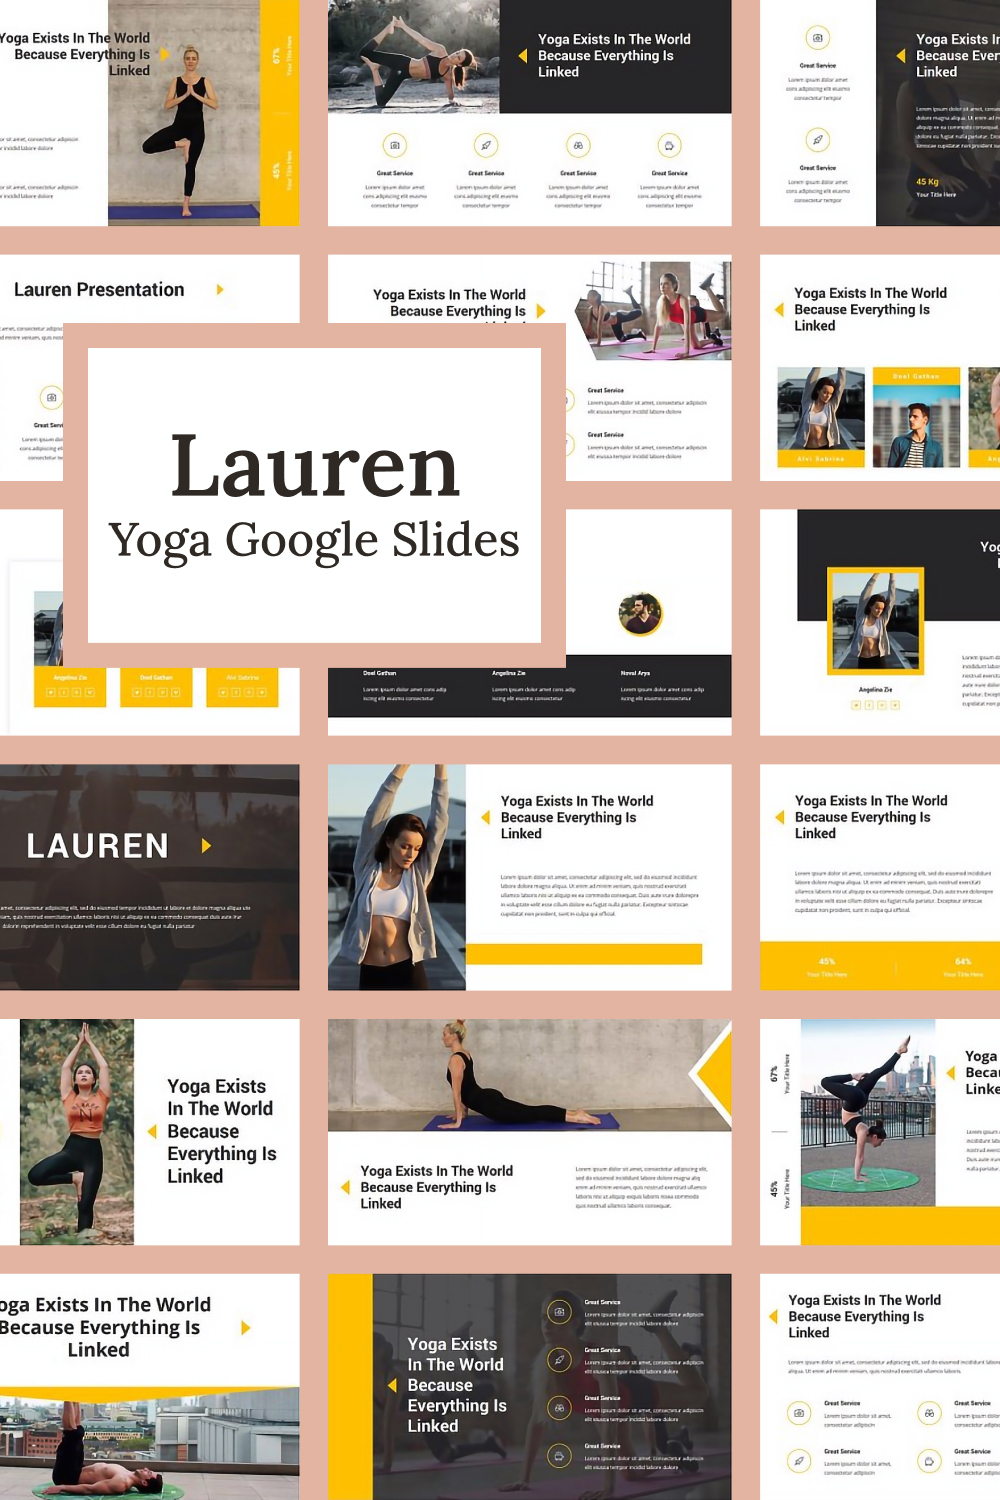 Lauren yoga google slides of pinterest.